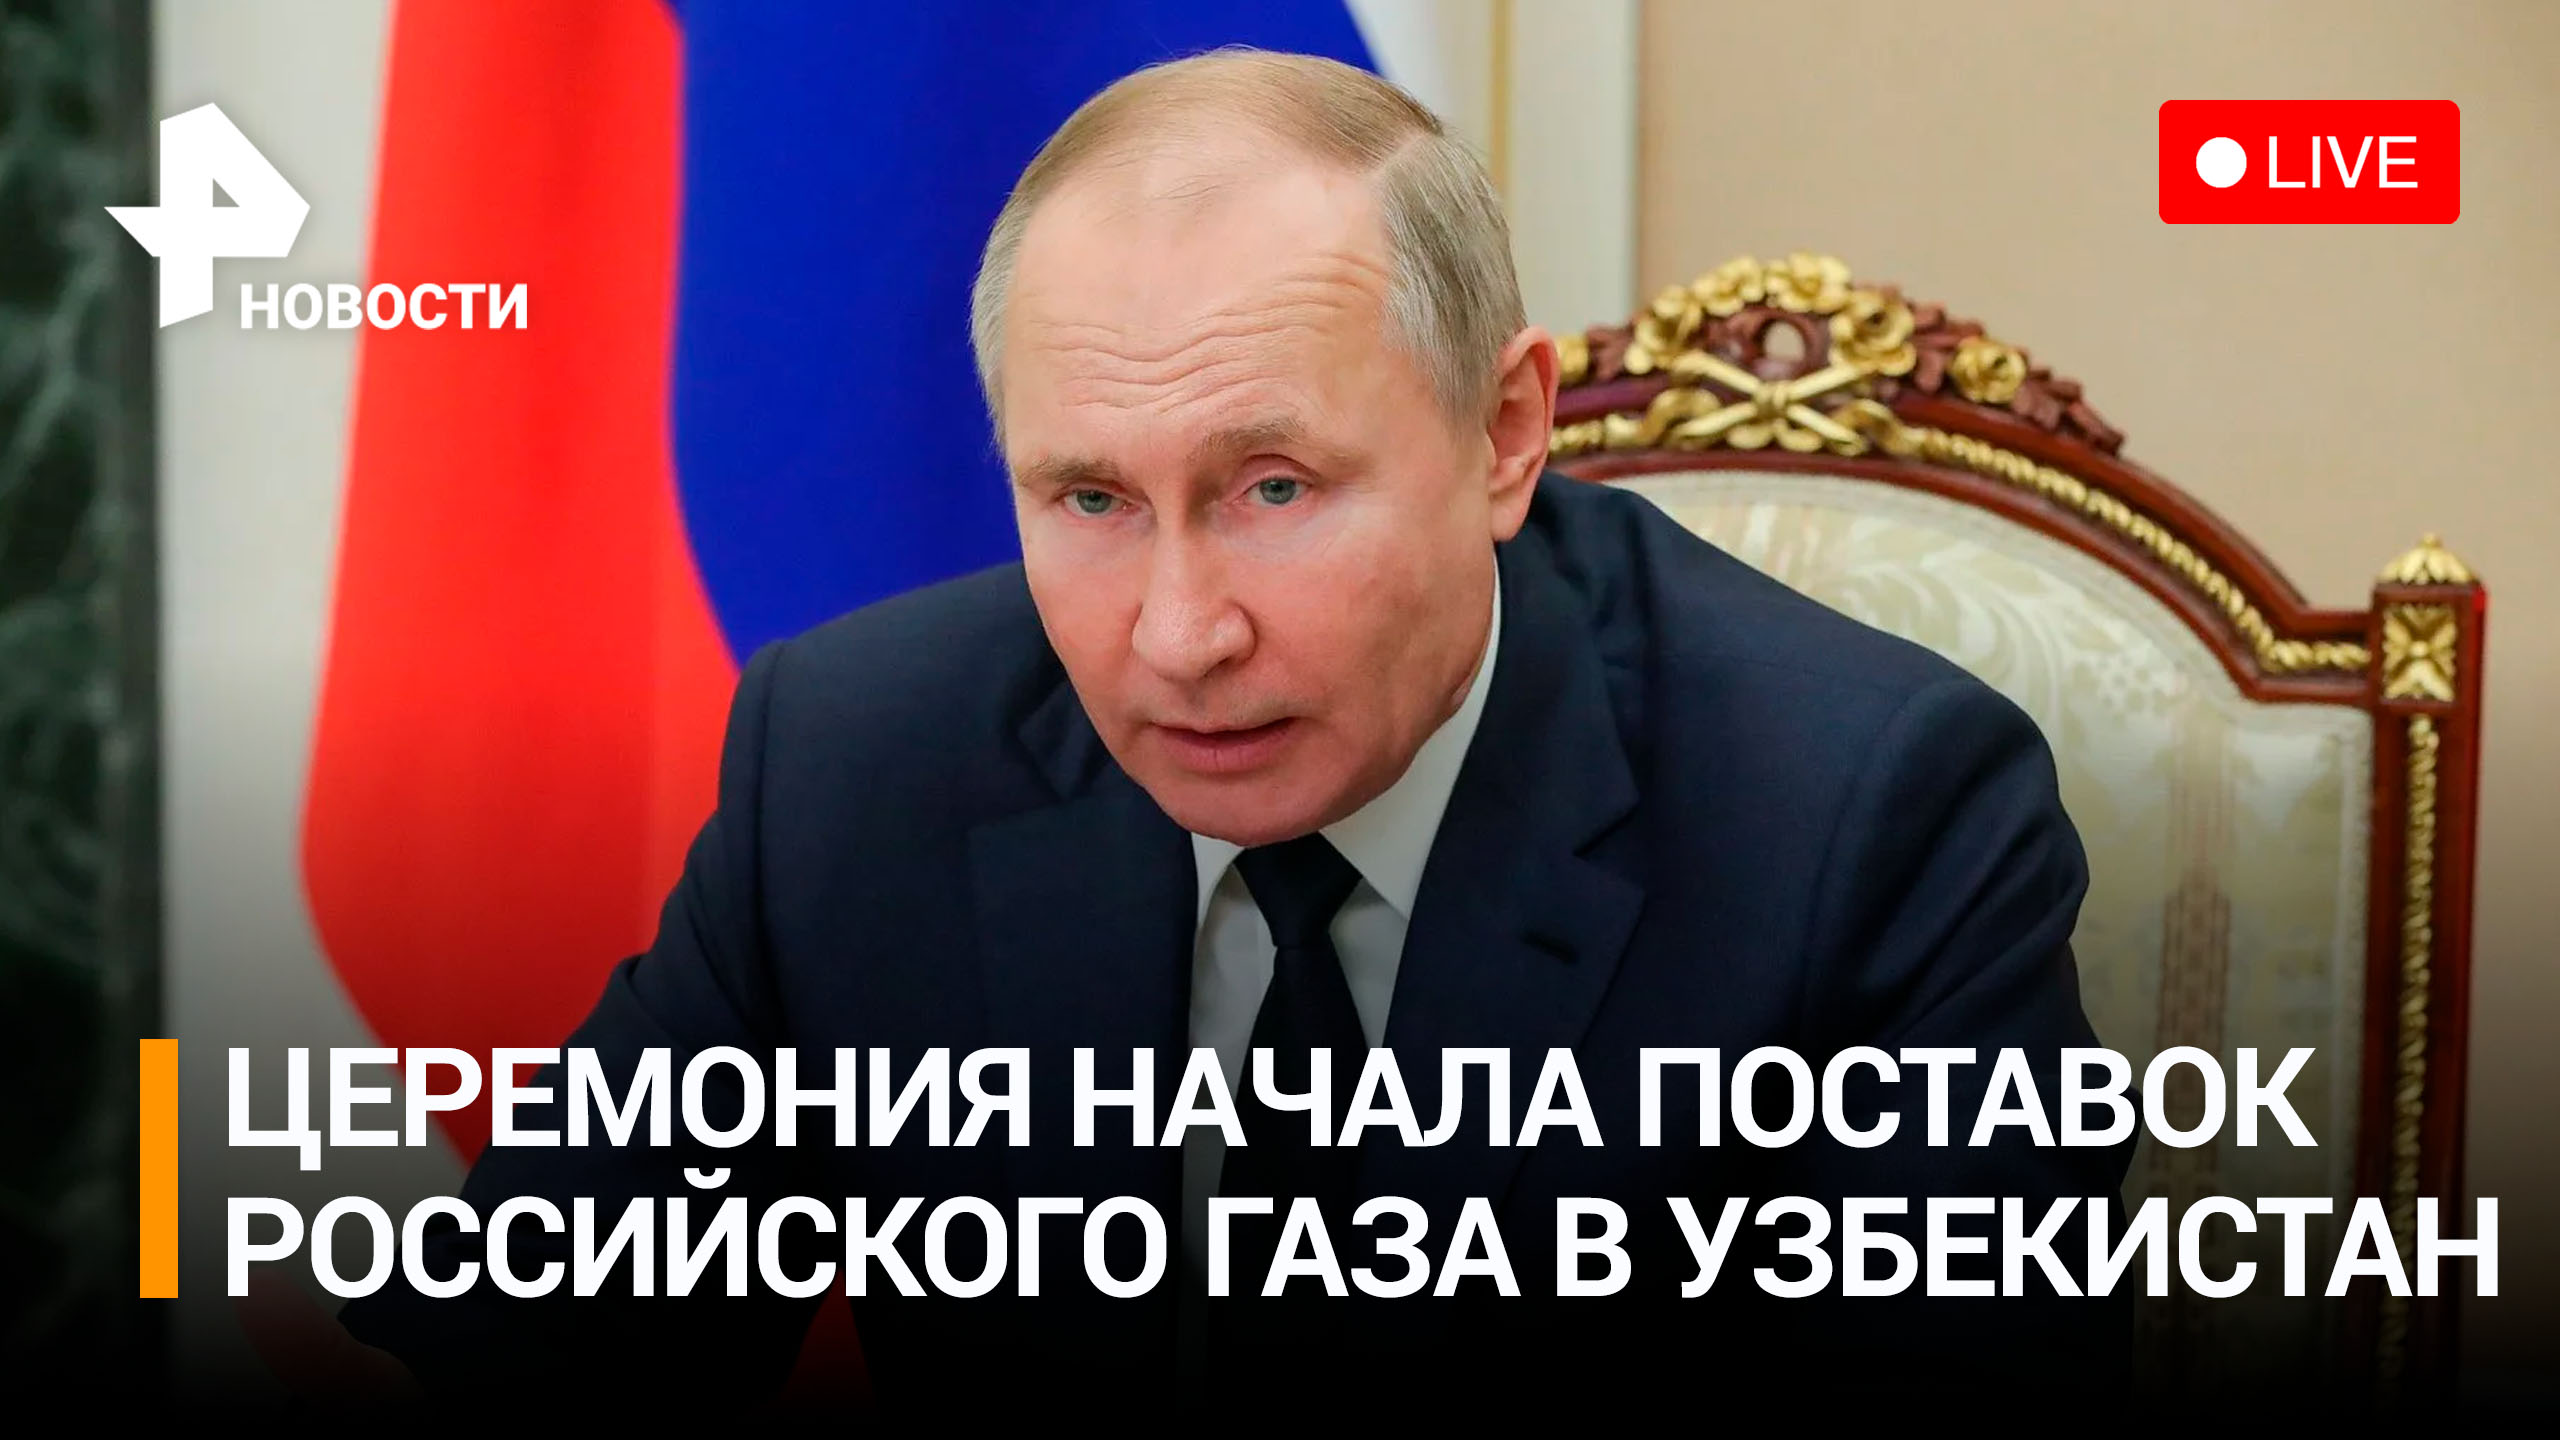 Владимир Путин на встрече с Токаевым и Мирзиёевым: начало поставок российского газа в Узбекистан